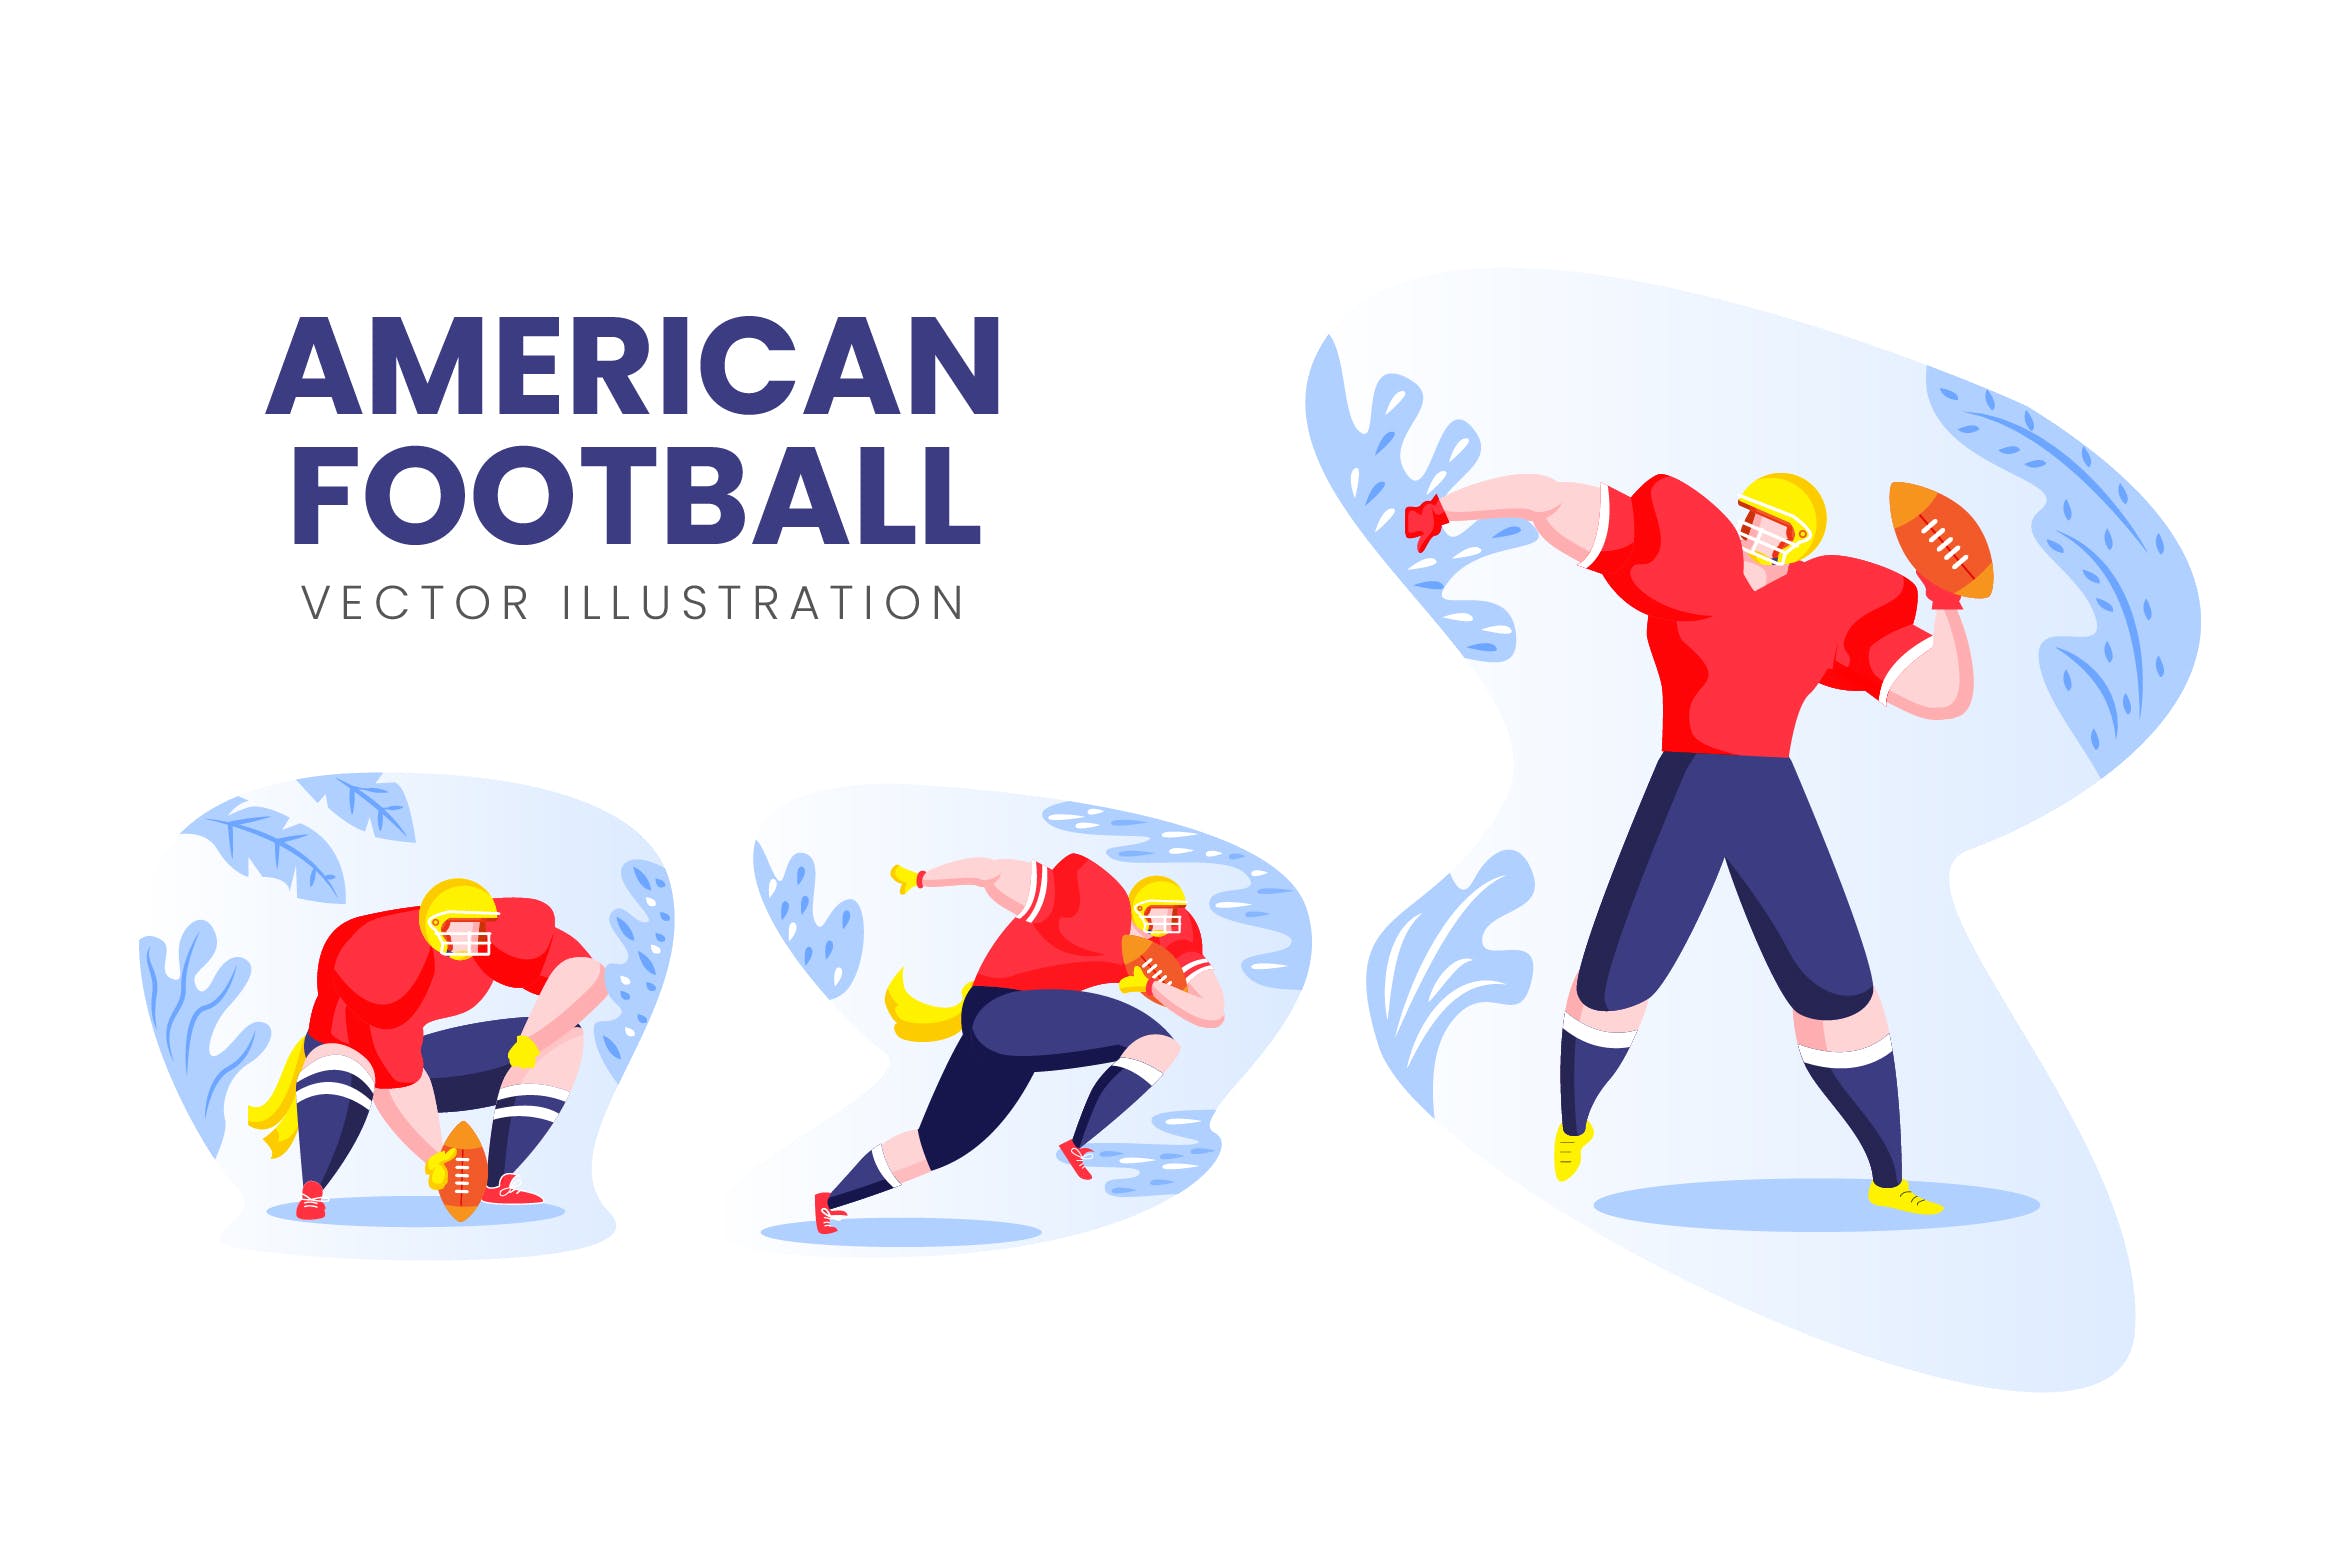 美式足球运动员人物形象第一素材精选手绘插画矢量素材 American Football Vector Character Set插图